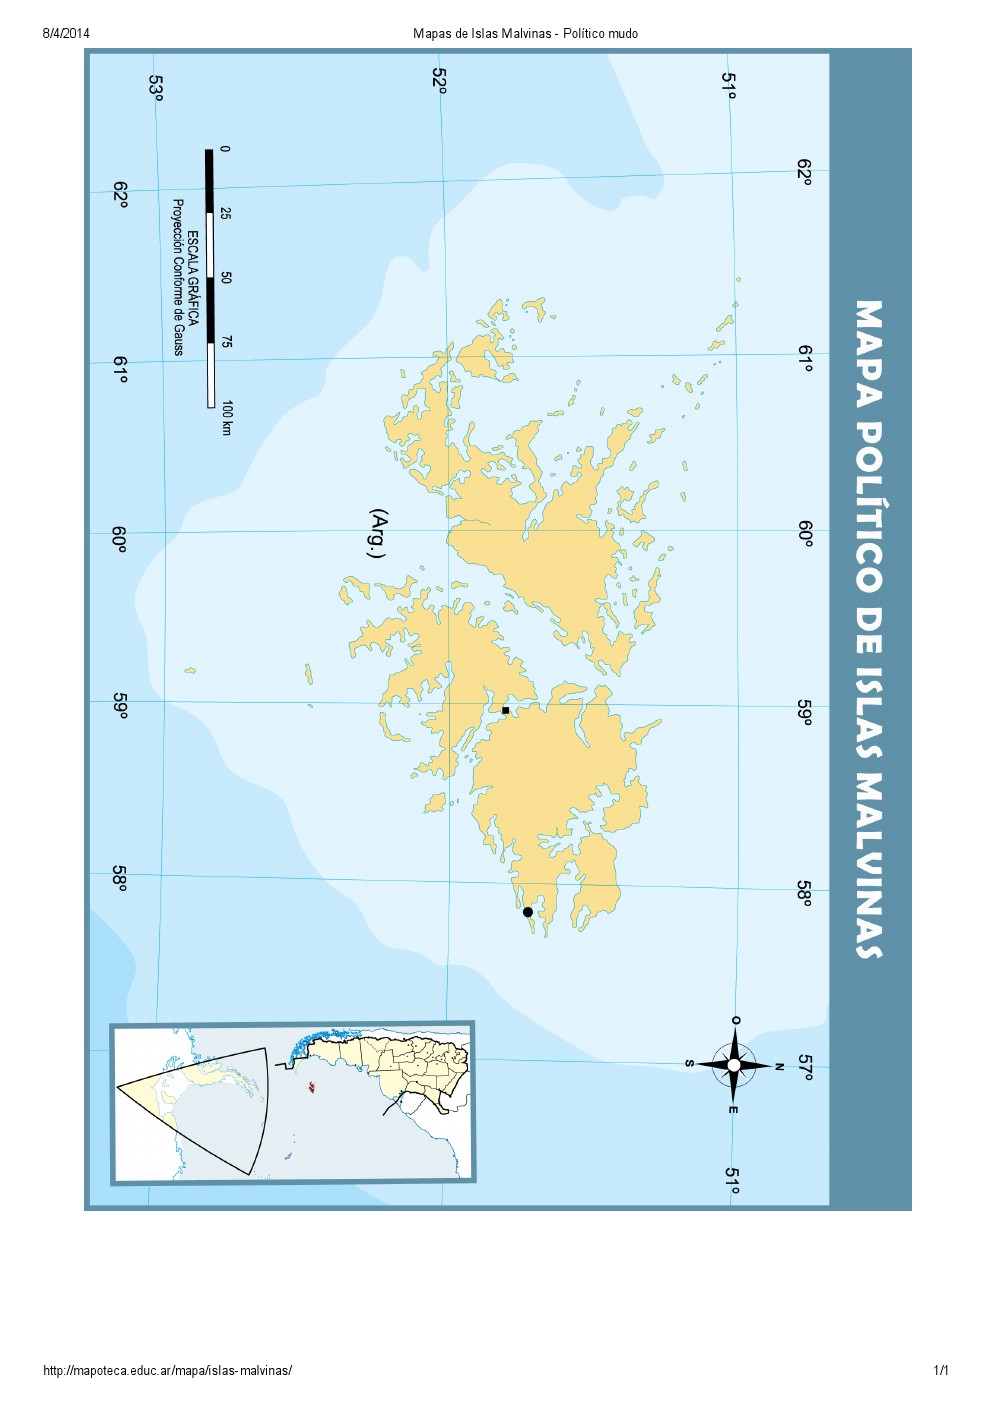 Mapa mudo de islas de las Islas Malvinas. Mapoteca de Educ.ar